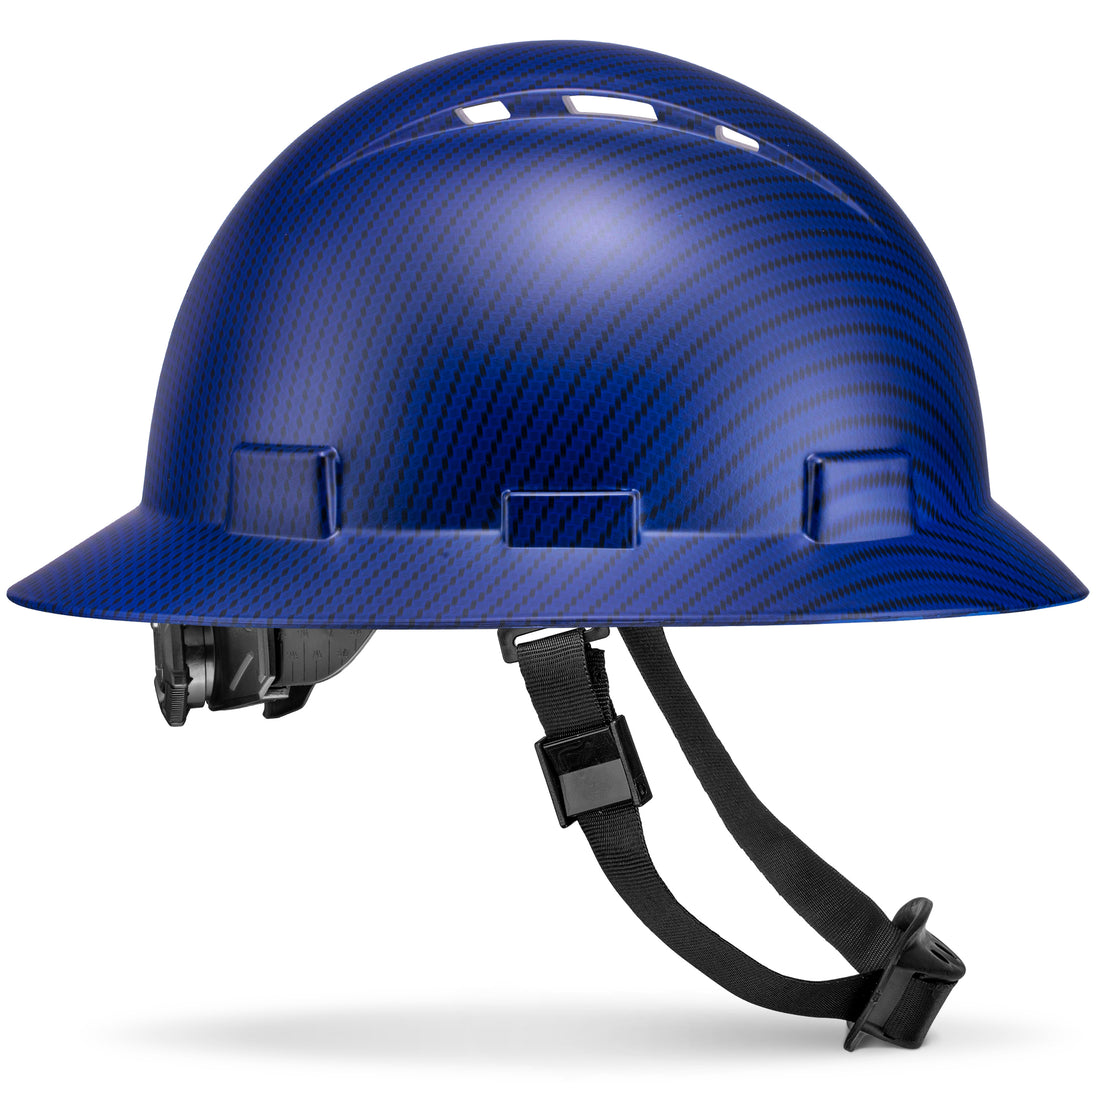 Full Brim Beguiled Blue Carbon Fiber Design Matte Finish Vented Hard Hat